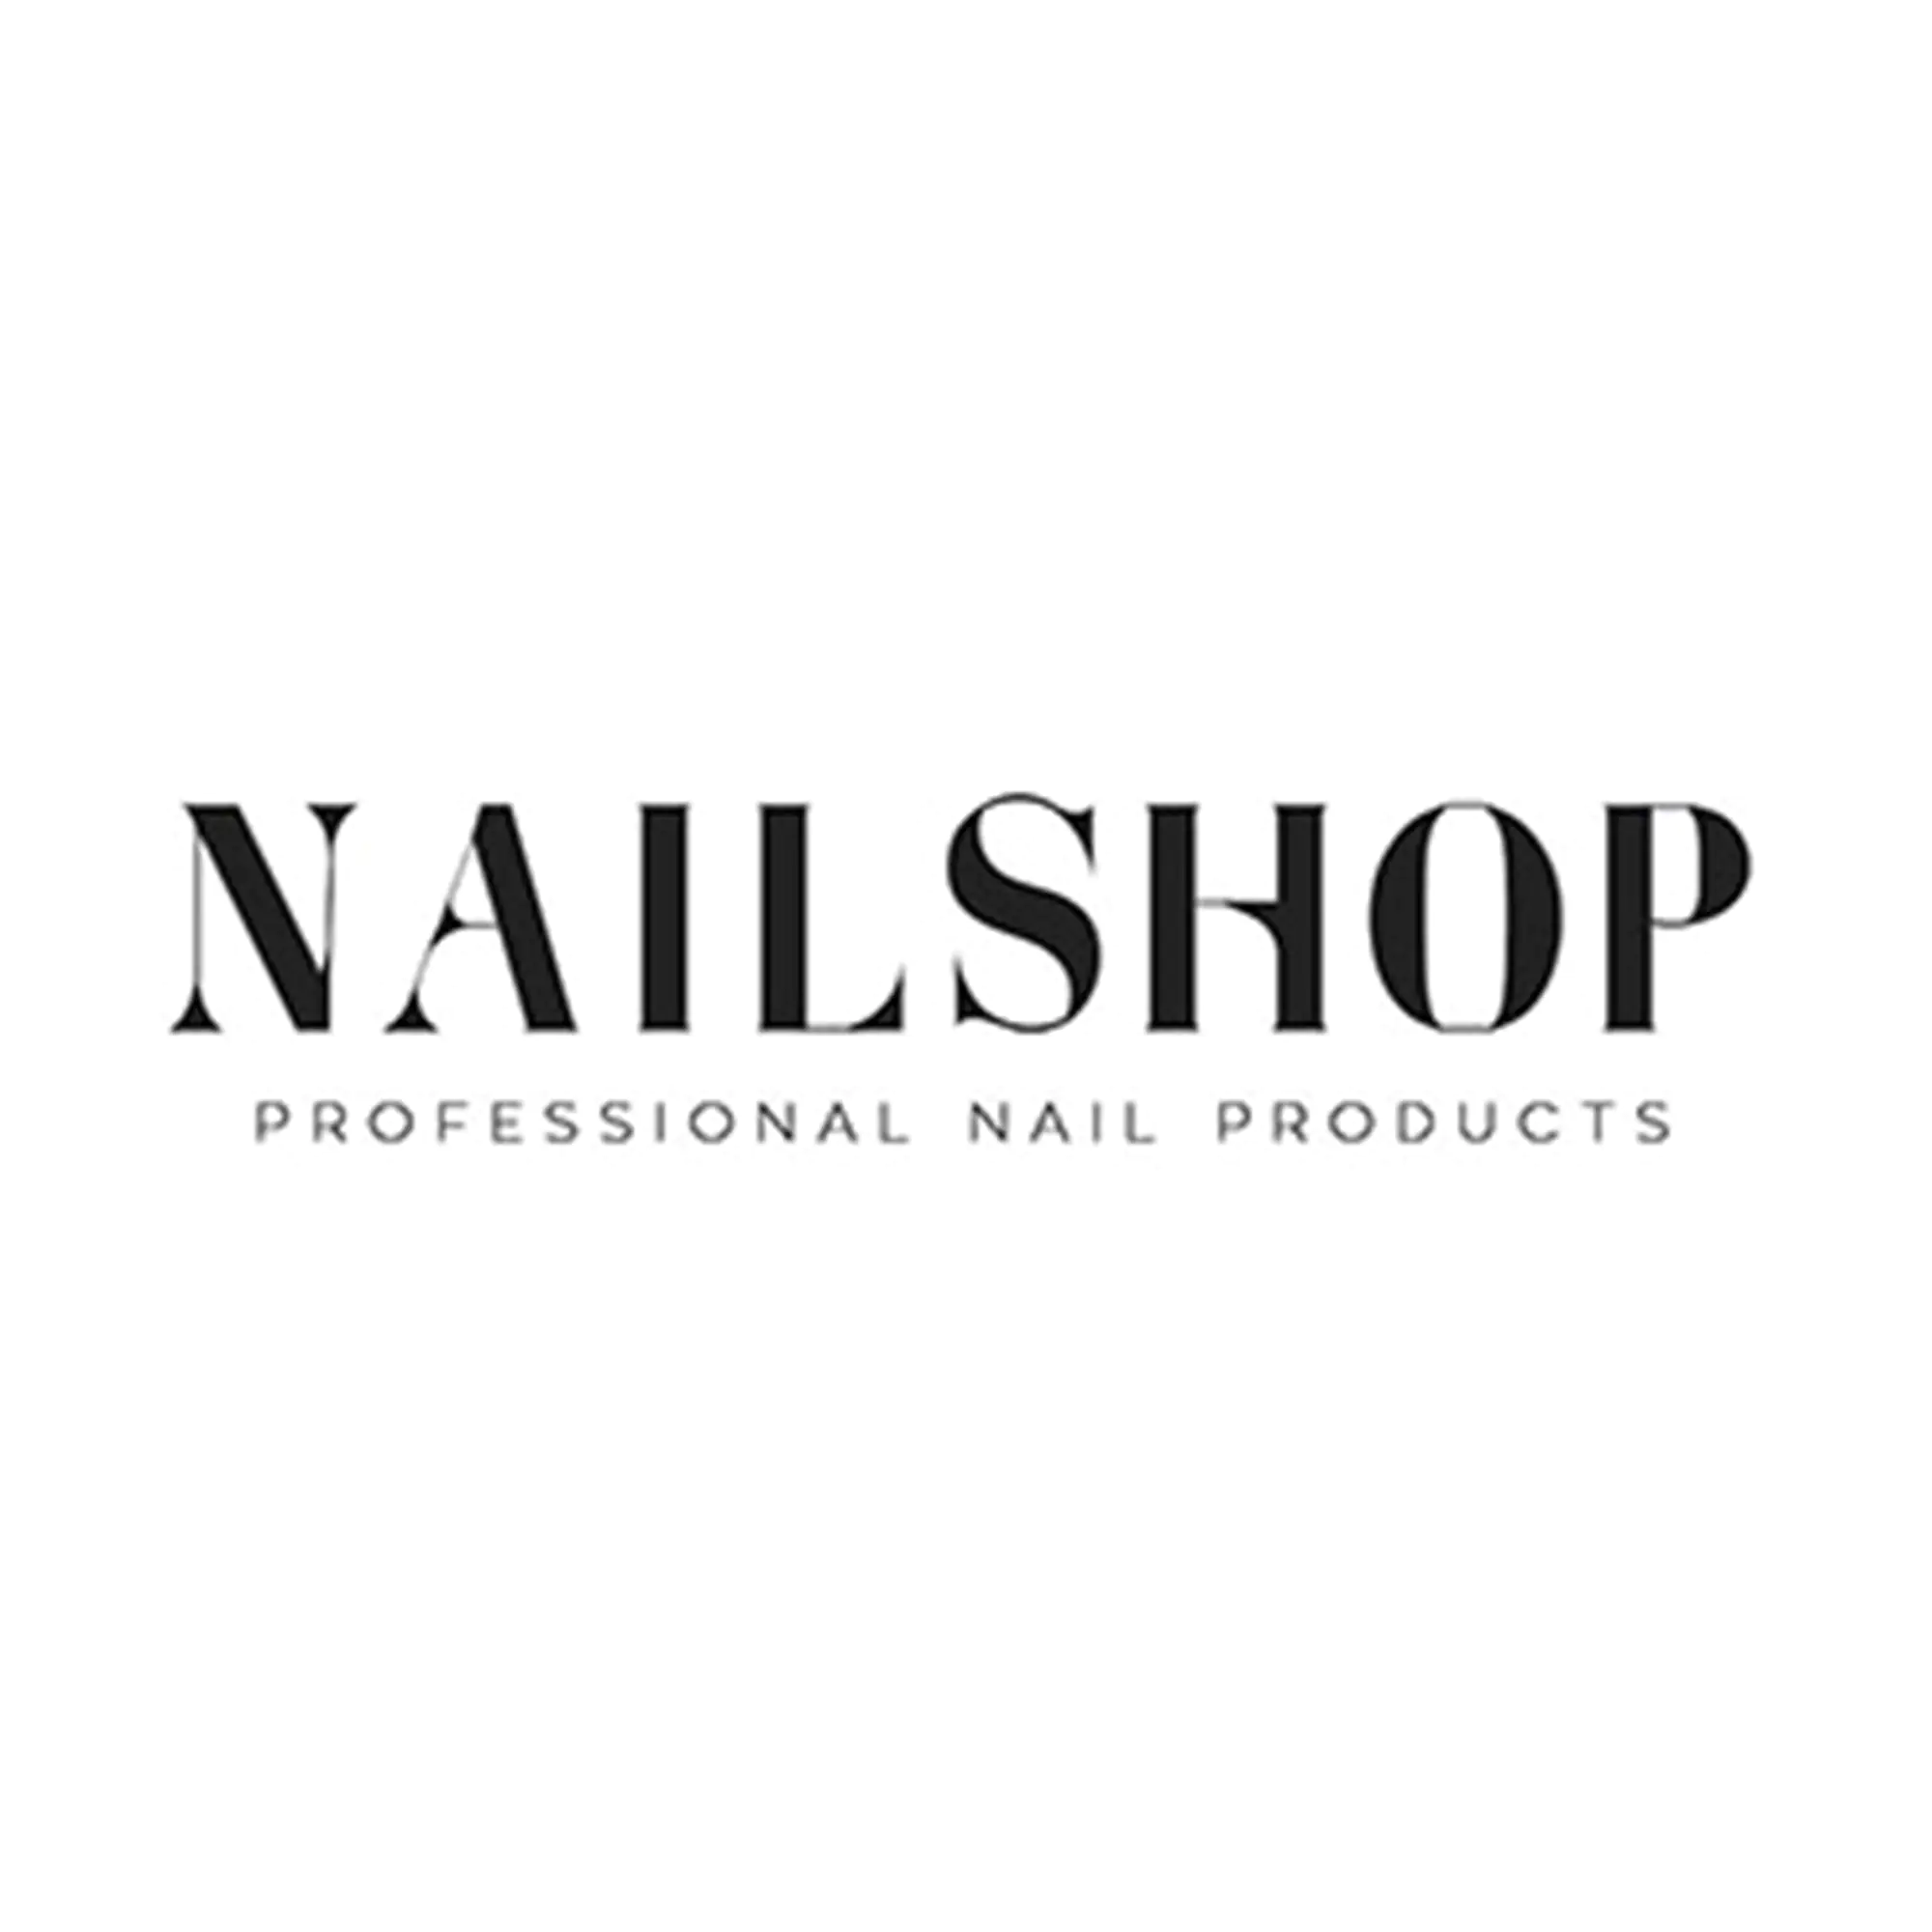 Nailshop Ξεβαφτικό Νυχιών Χωρίς Ασετόν - Femme Fatale - 